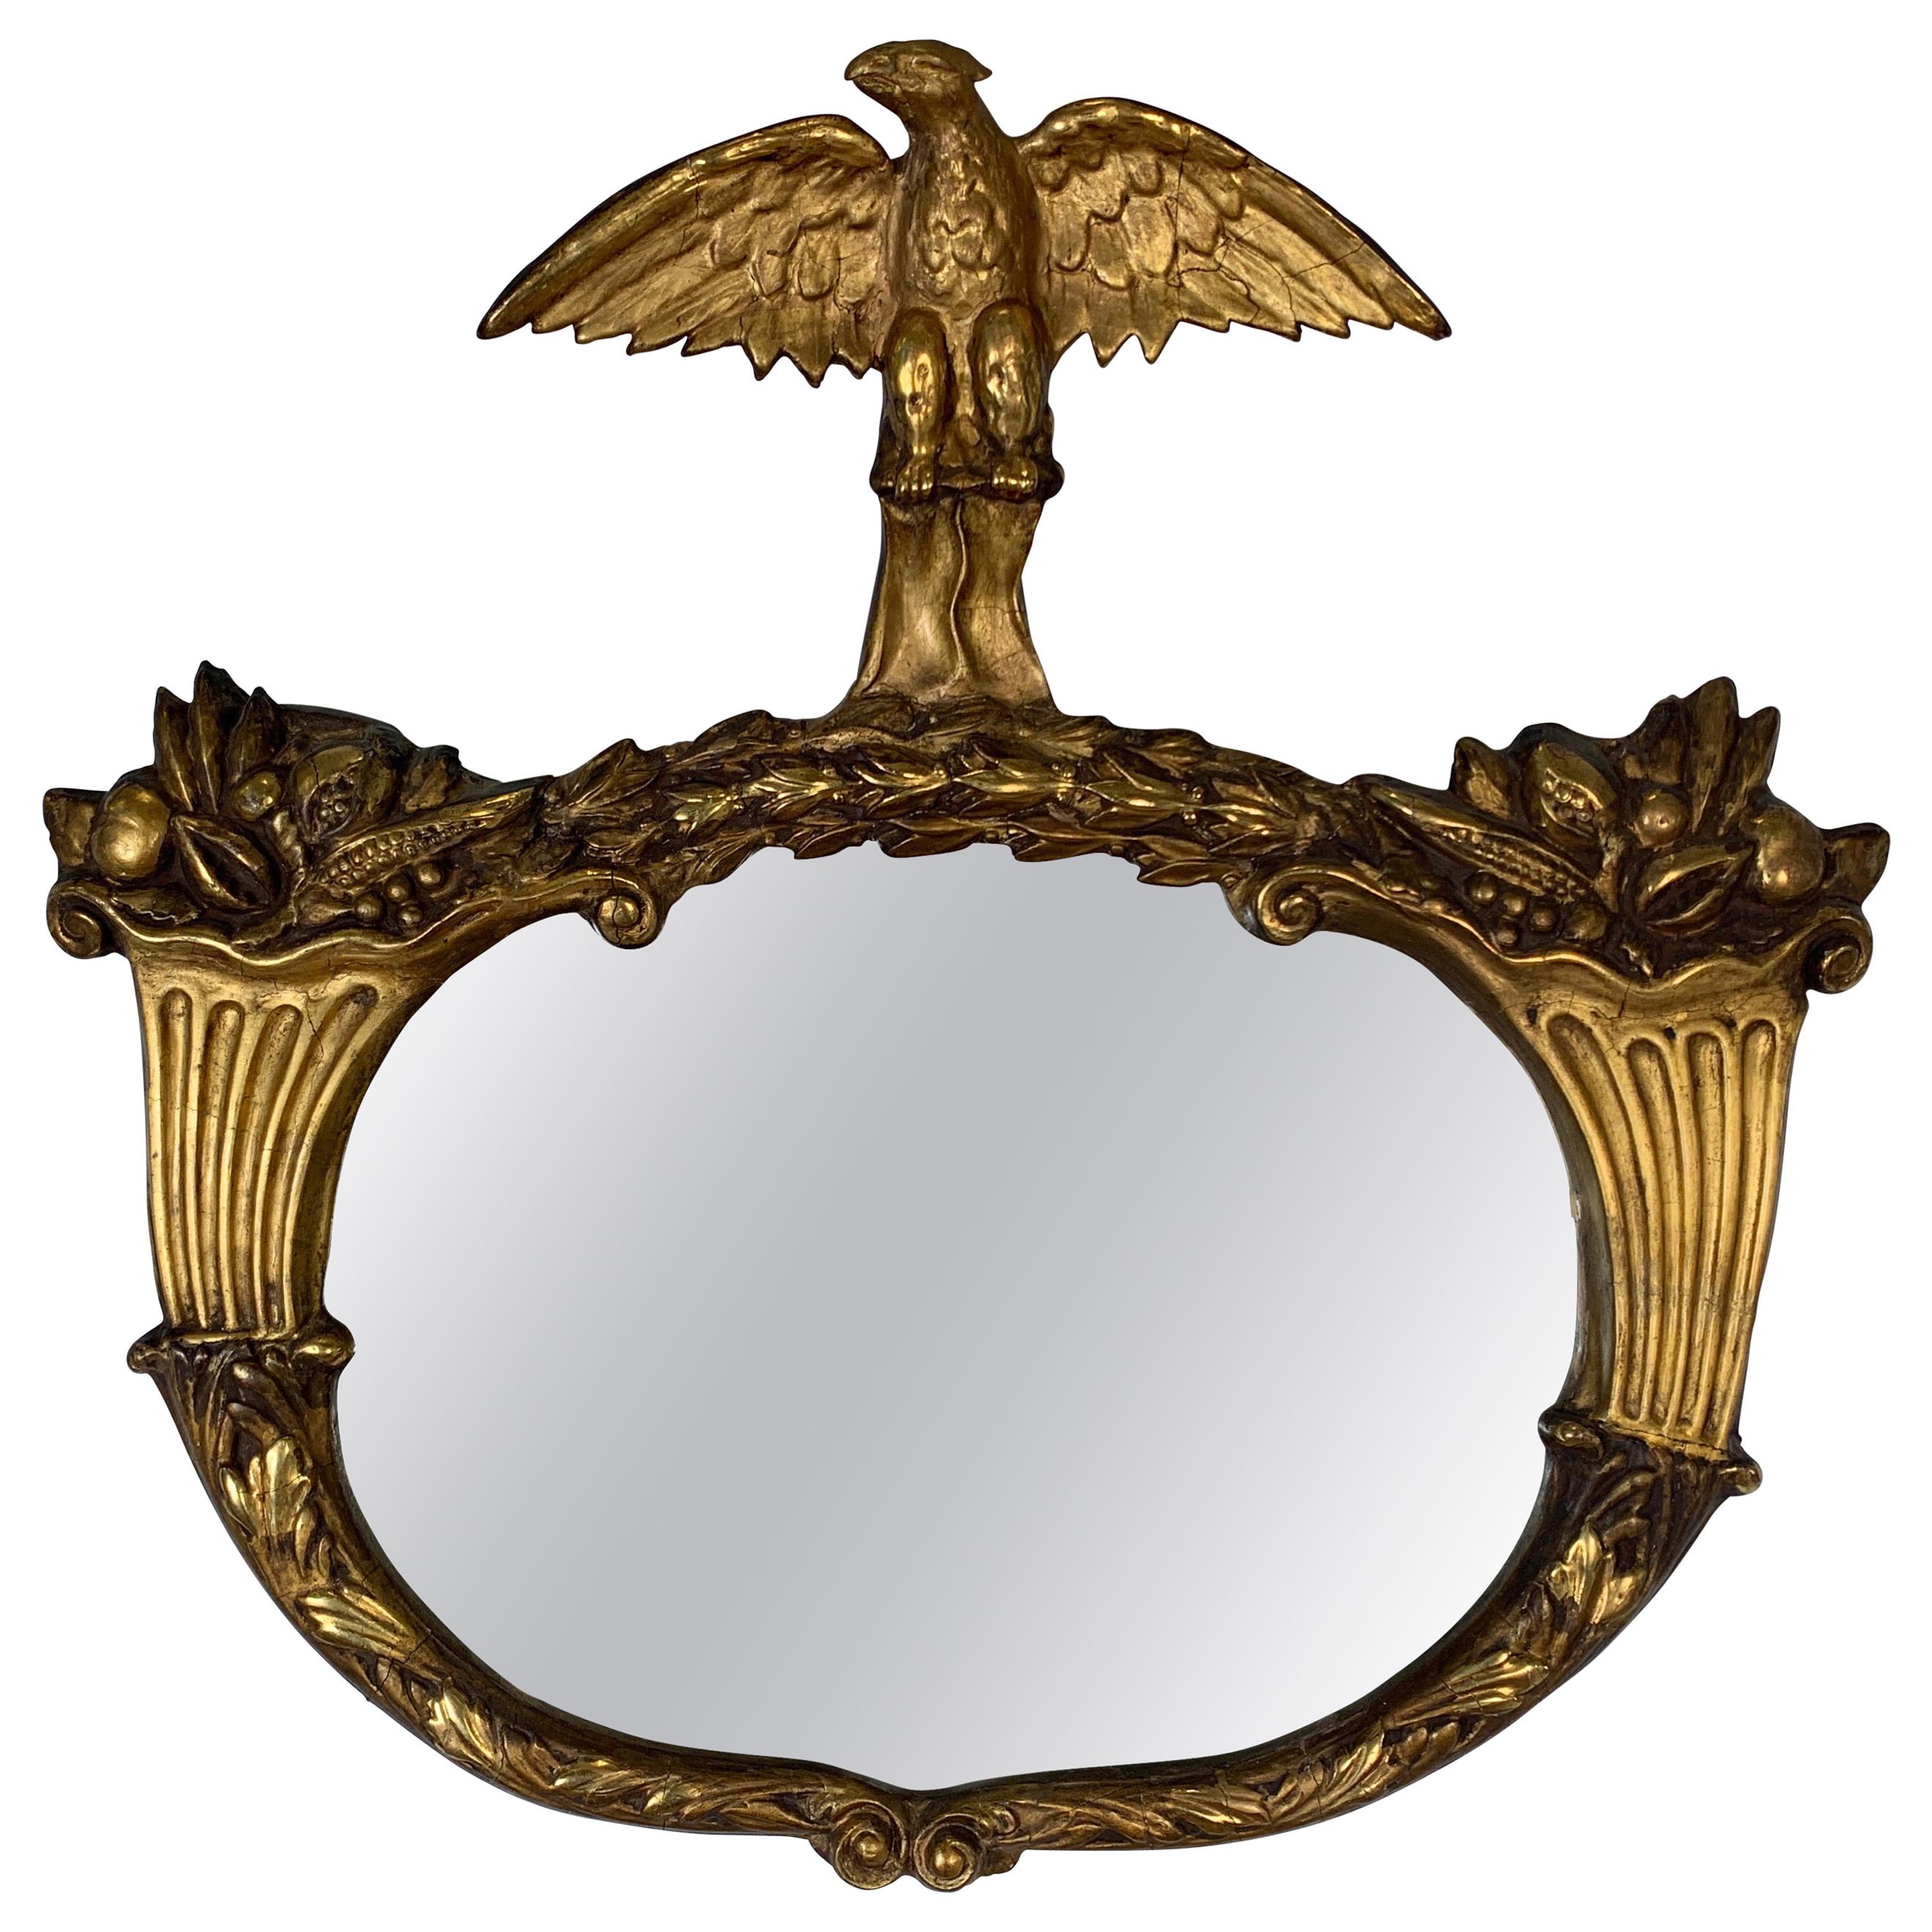 1840s Period Giltwood and Gesso Americana Mirror with Eagle & Cornucopia Design